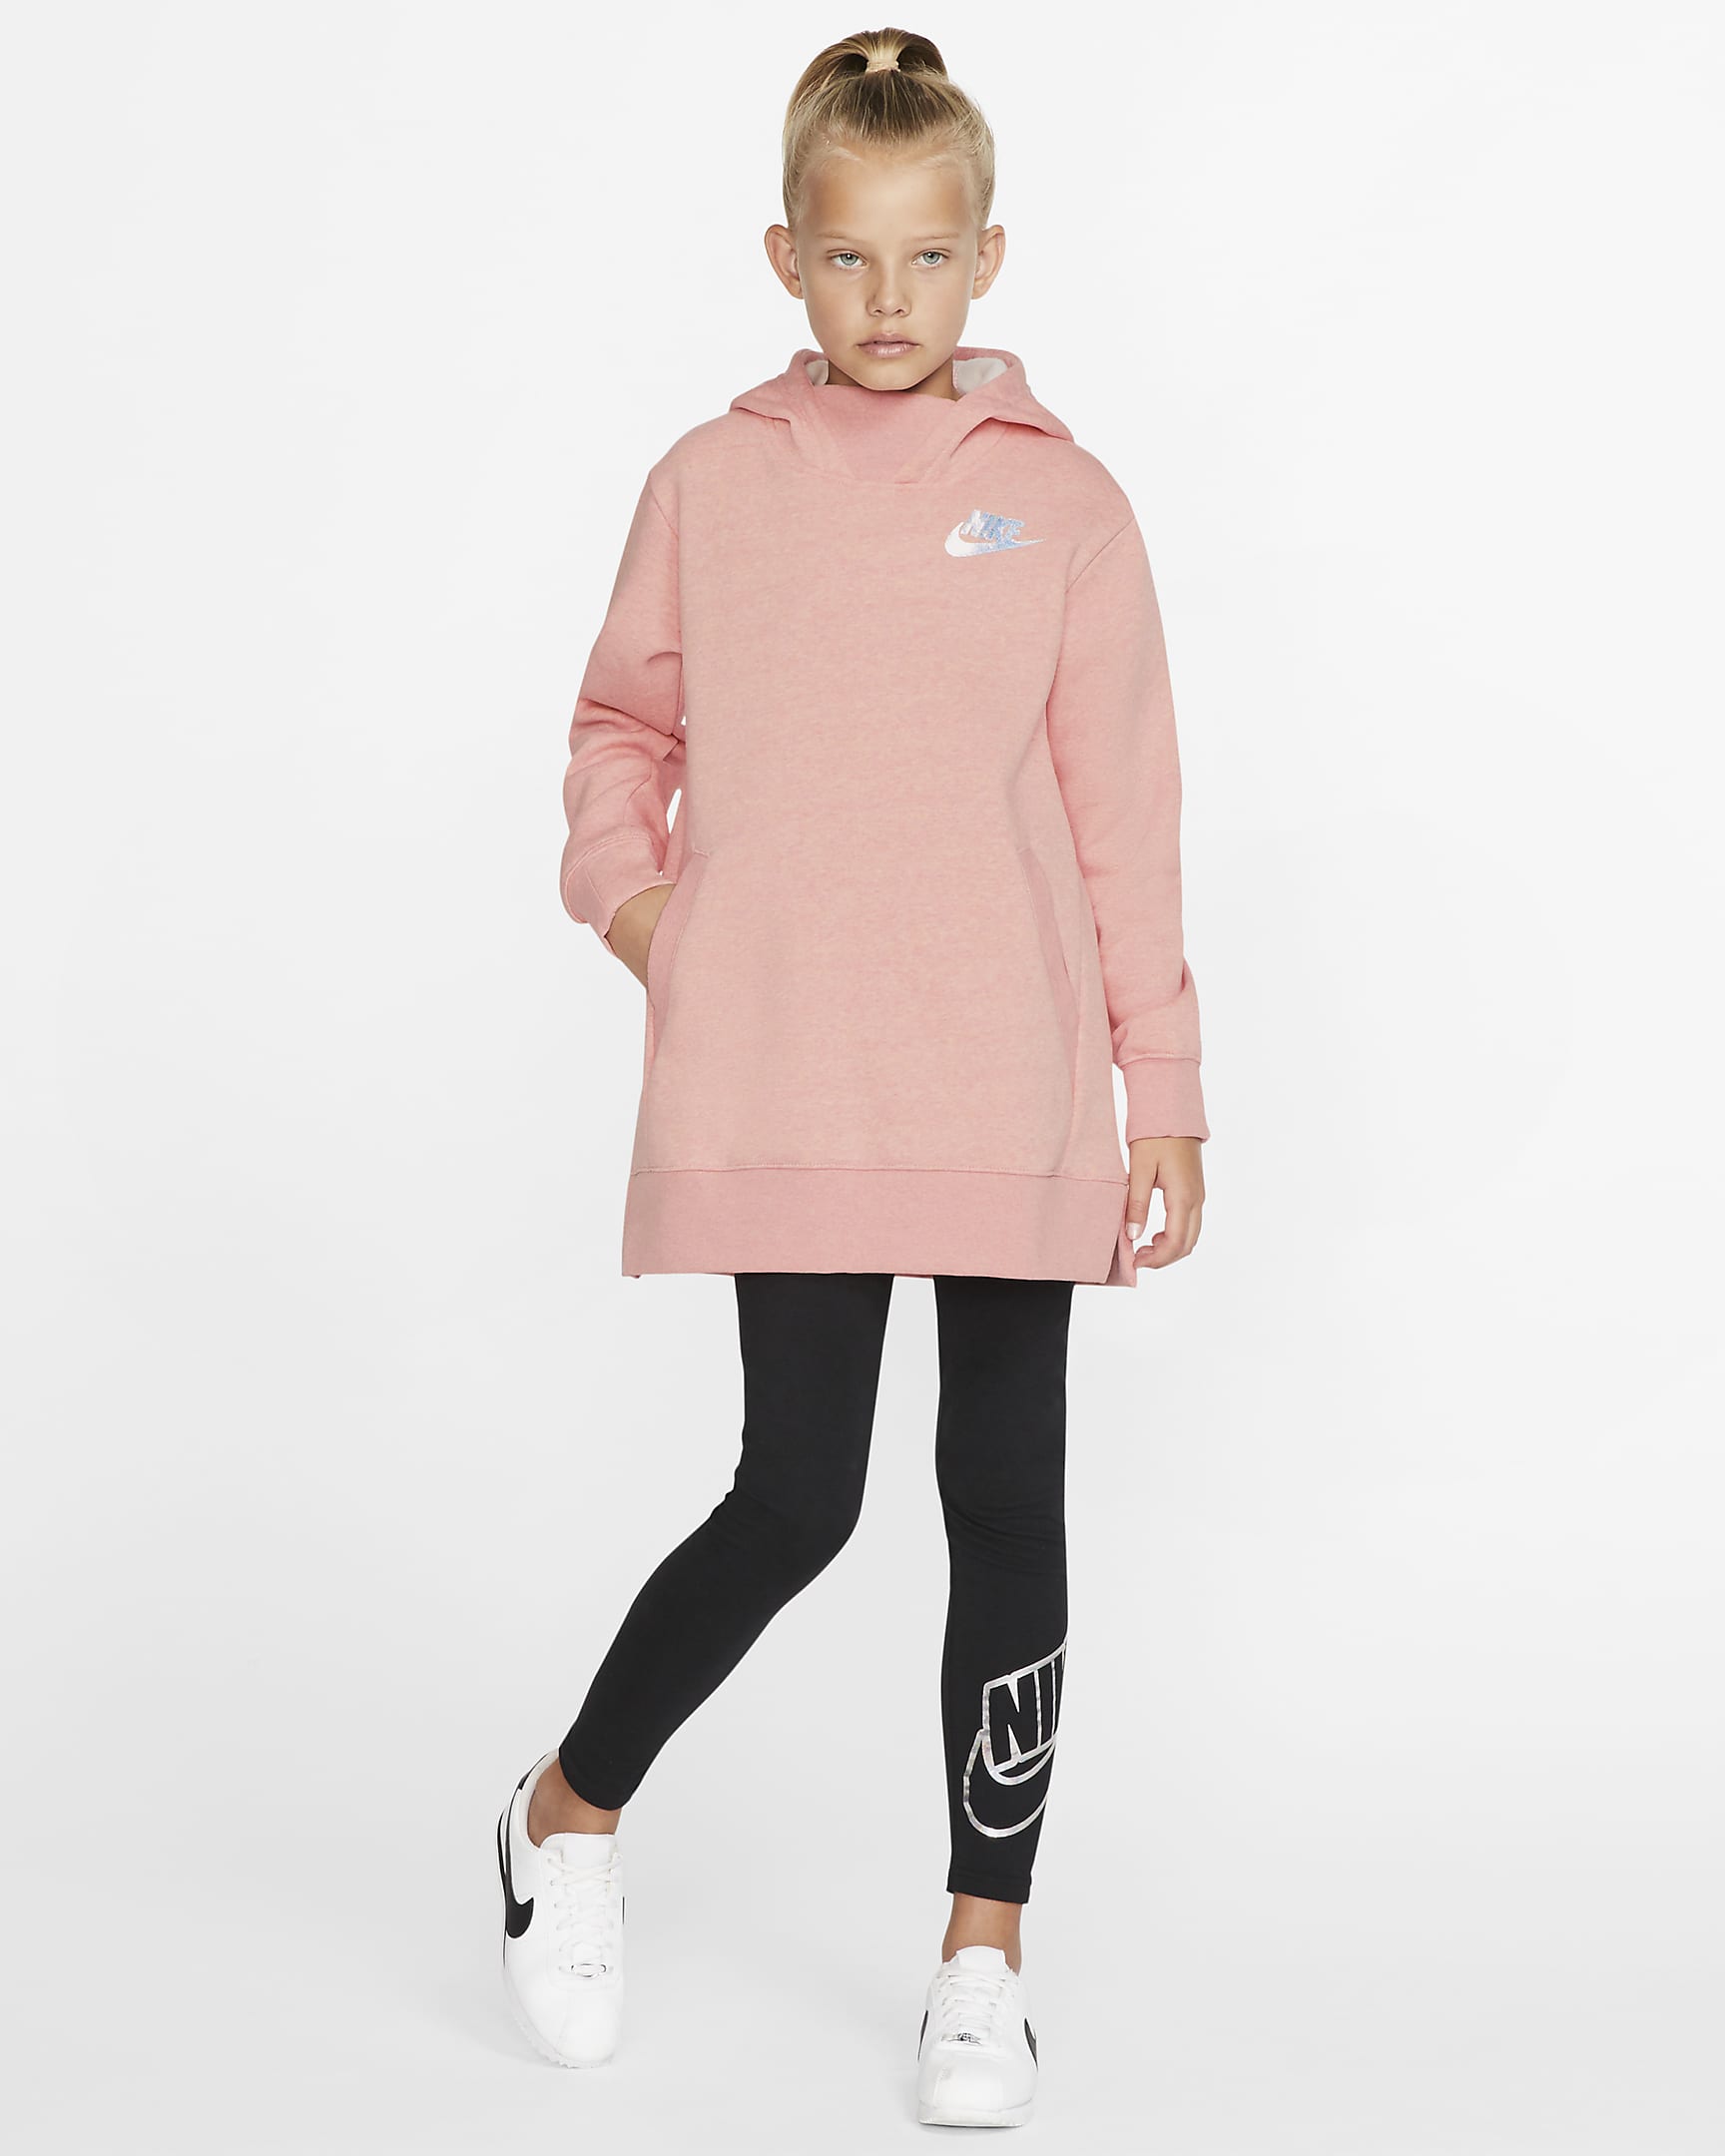 Nike Sportswear Older Kids' (Girls') Fleece Top. Nike CA